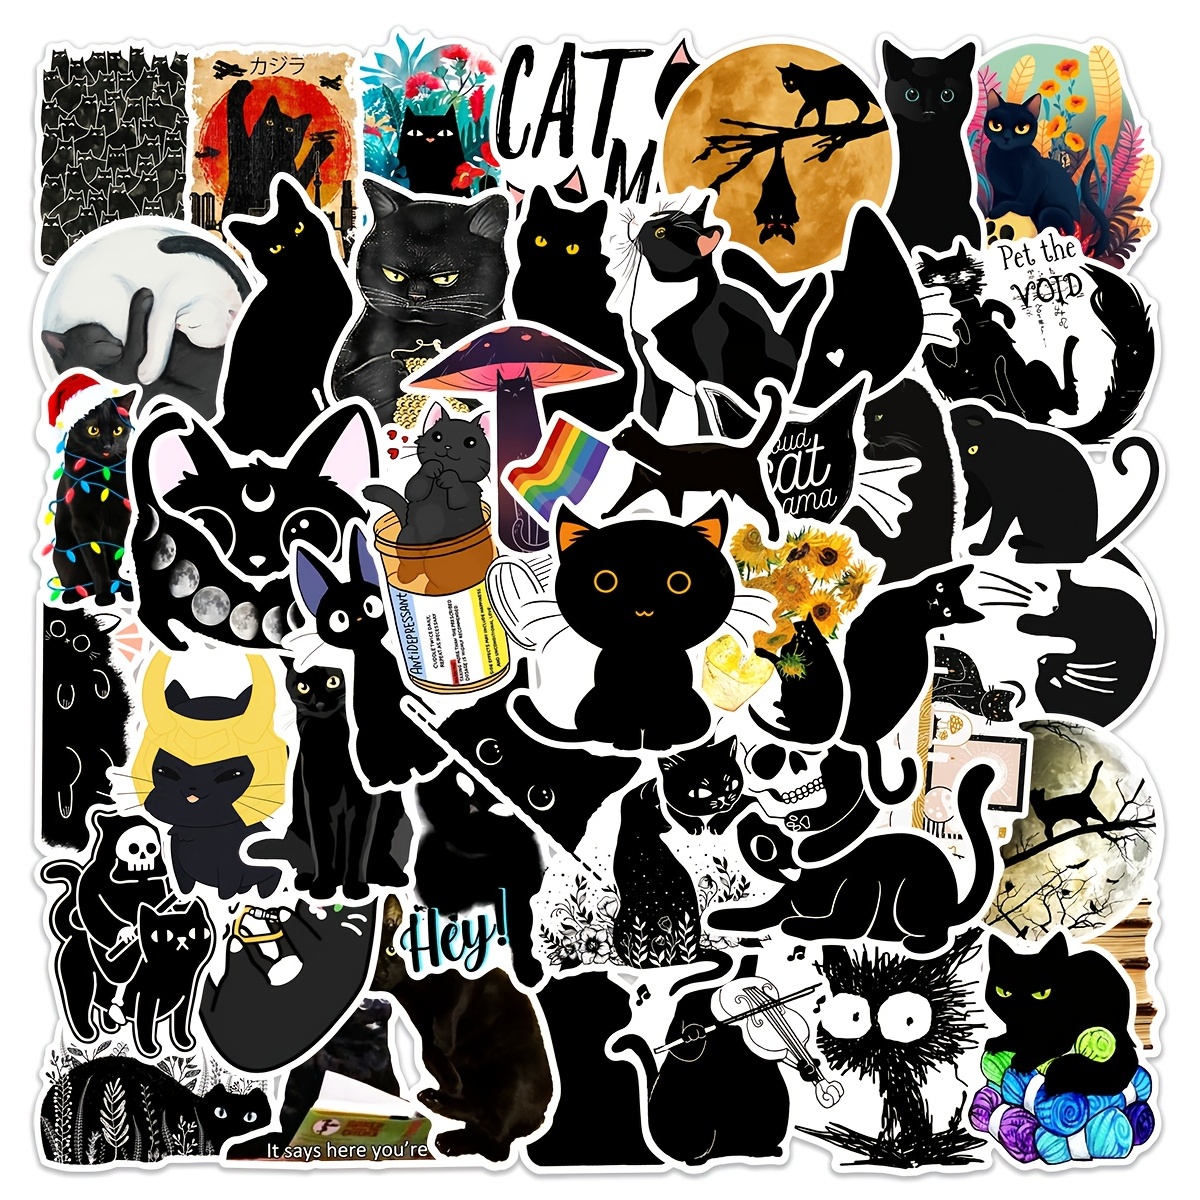 Cute cartoon black cat sticker